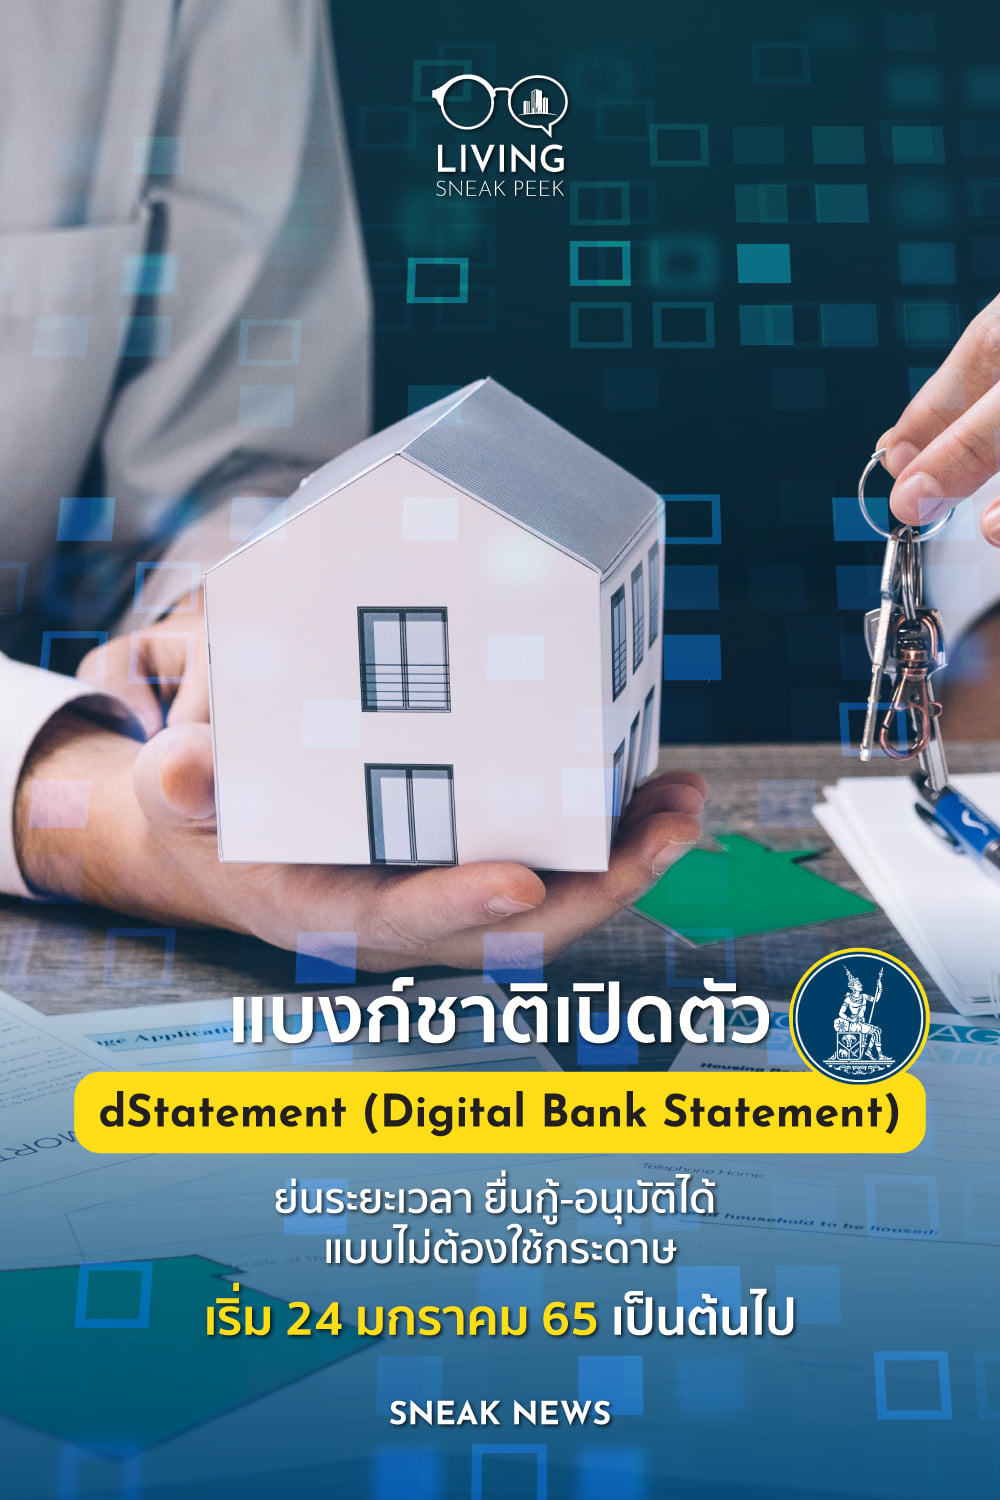 แบงก์ชาติเปิดตัว dStatement (Digital Bank Statement)